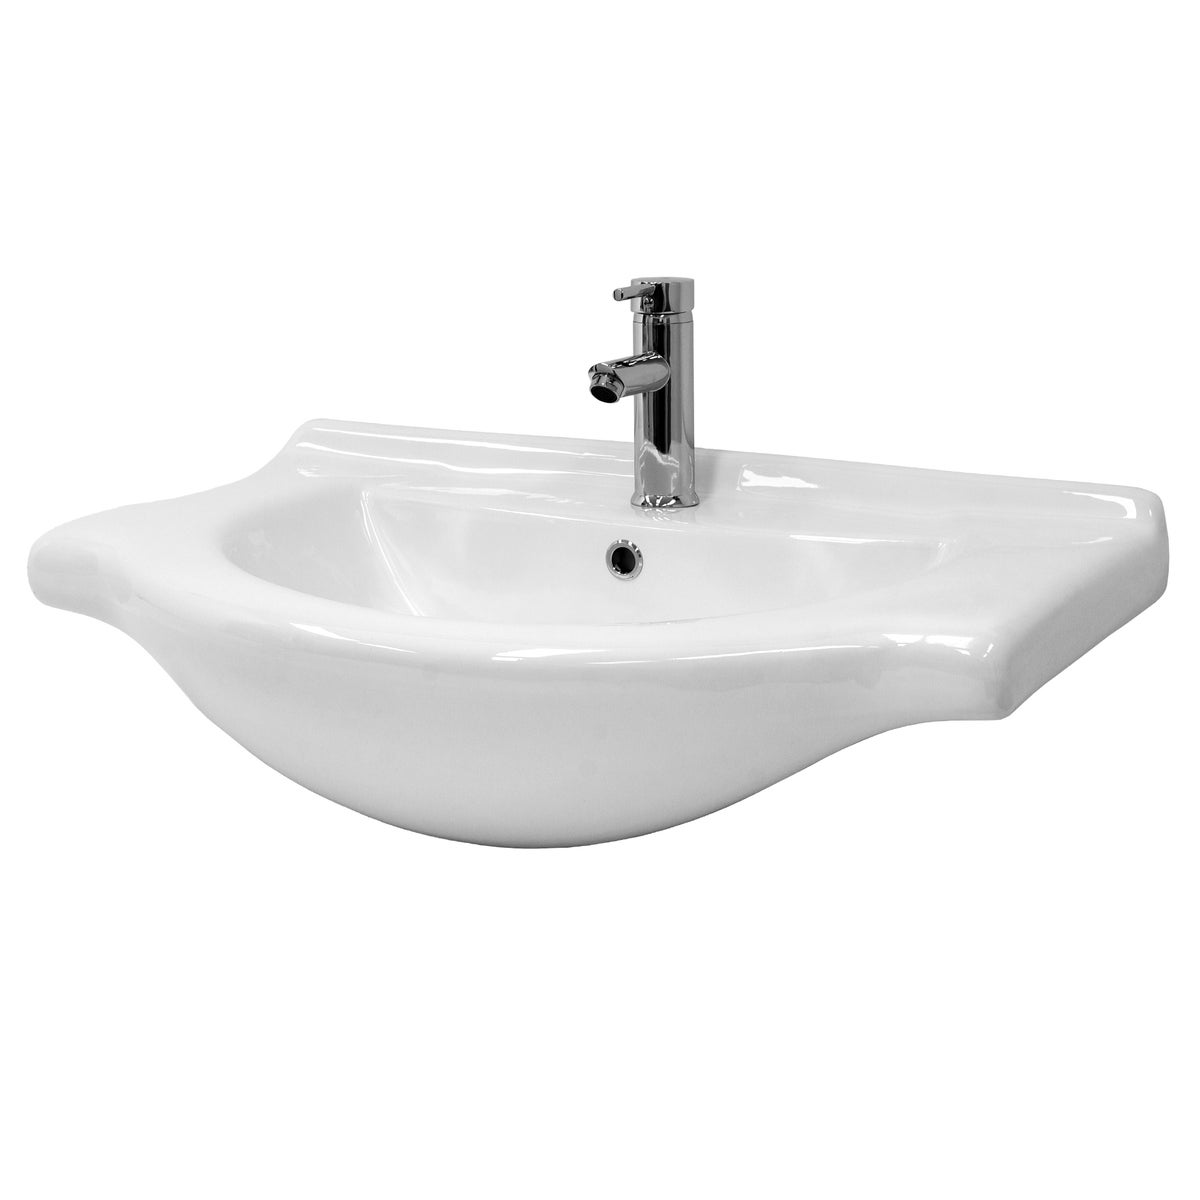 ML-Design Waschbecken aus Keramik Weiß 77x21,5x51,5 cm, Einbauwaschbecken mit Hahnloch und Überlauf, Aufsatzwaschbecken Einbauwaschtisch Waschschale Waschplatz Handwaschbecken, für das Badezimmer